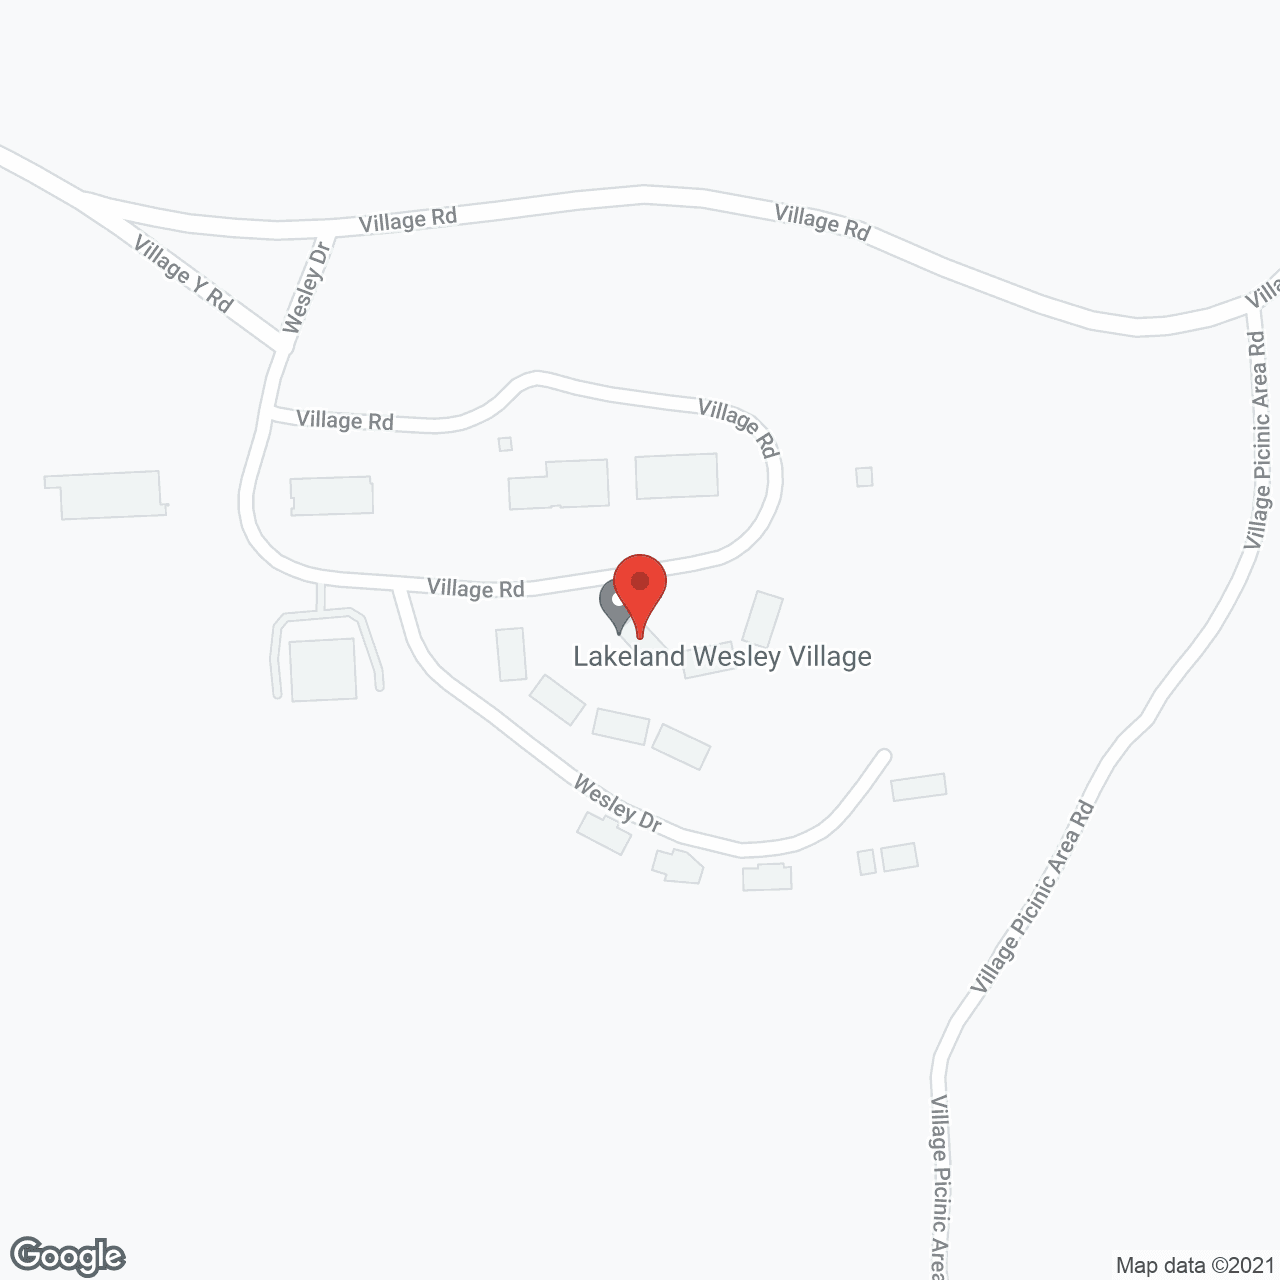 Lakeland Wesley Village in google map